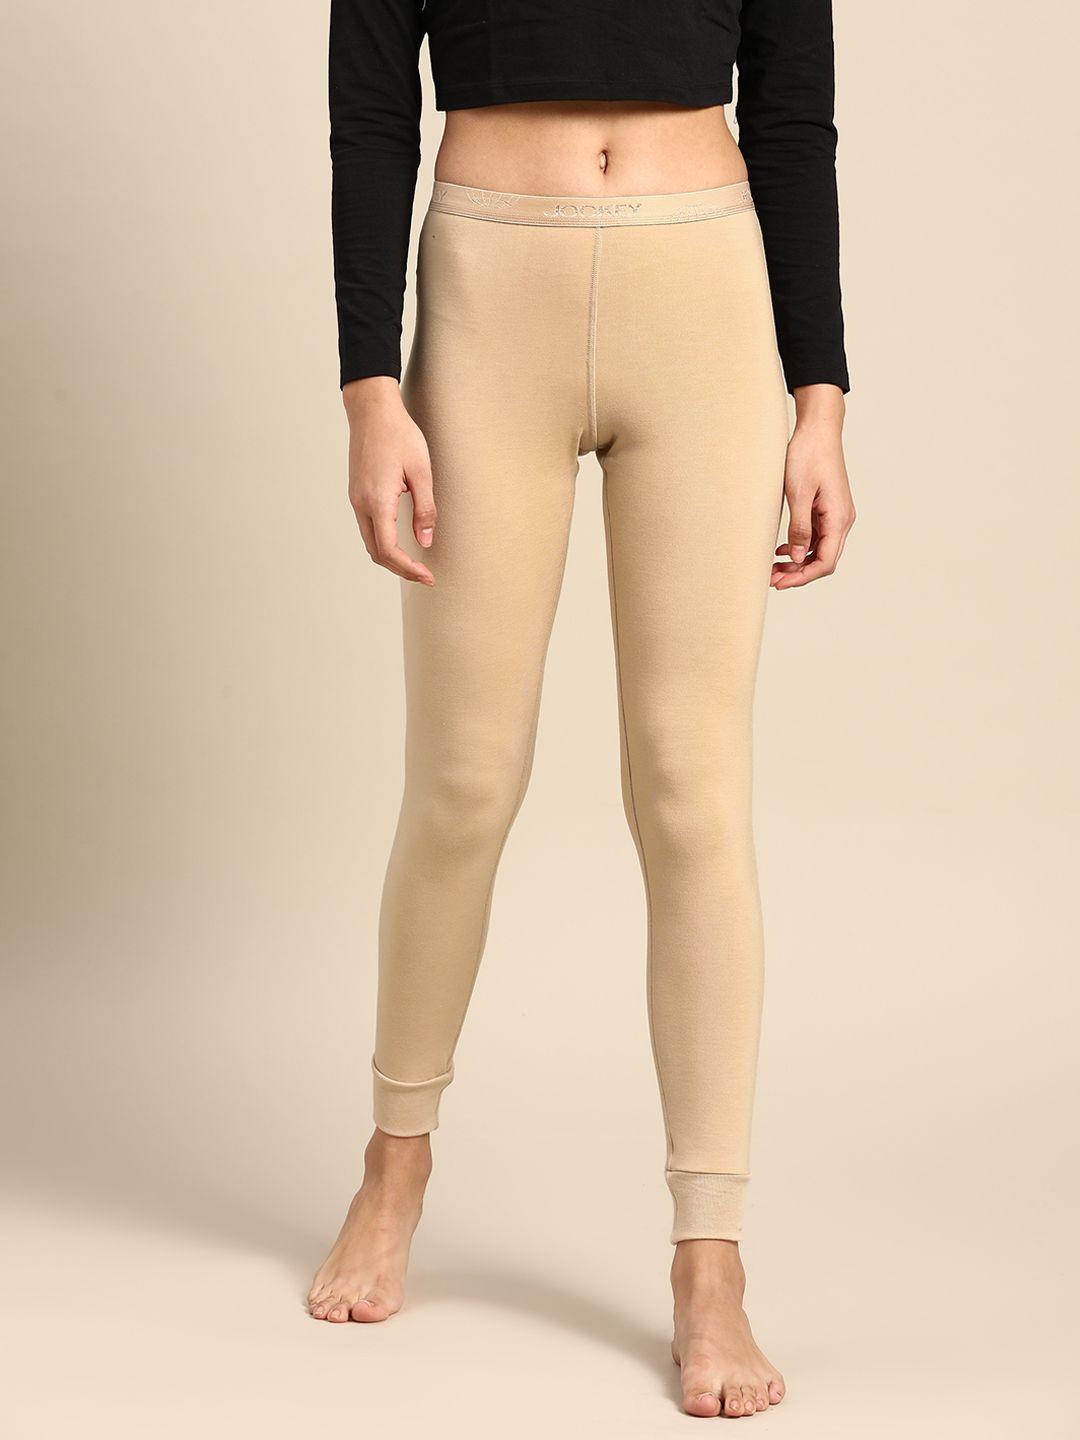 jockey-women-beige-solid-slim-fit-thermal-leggings